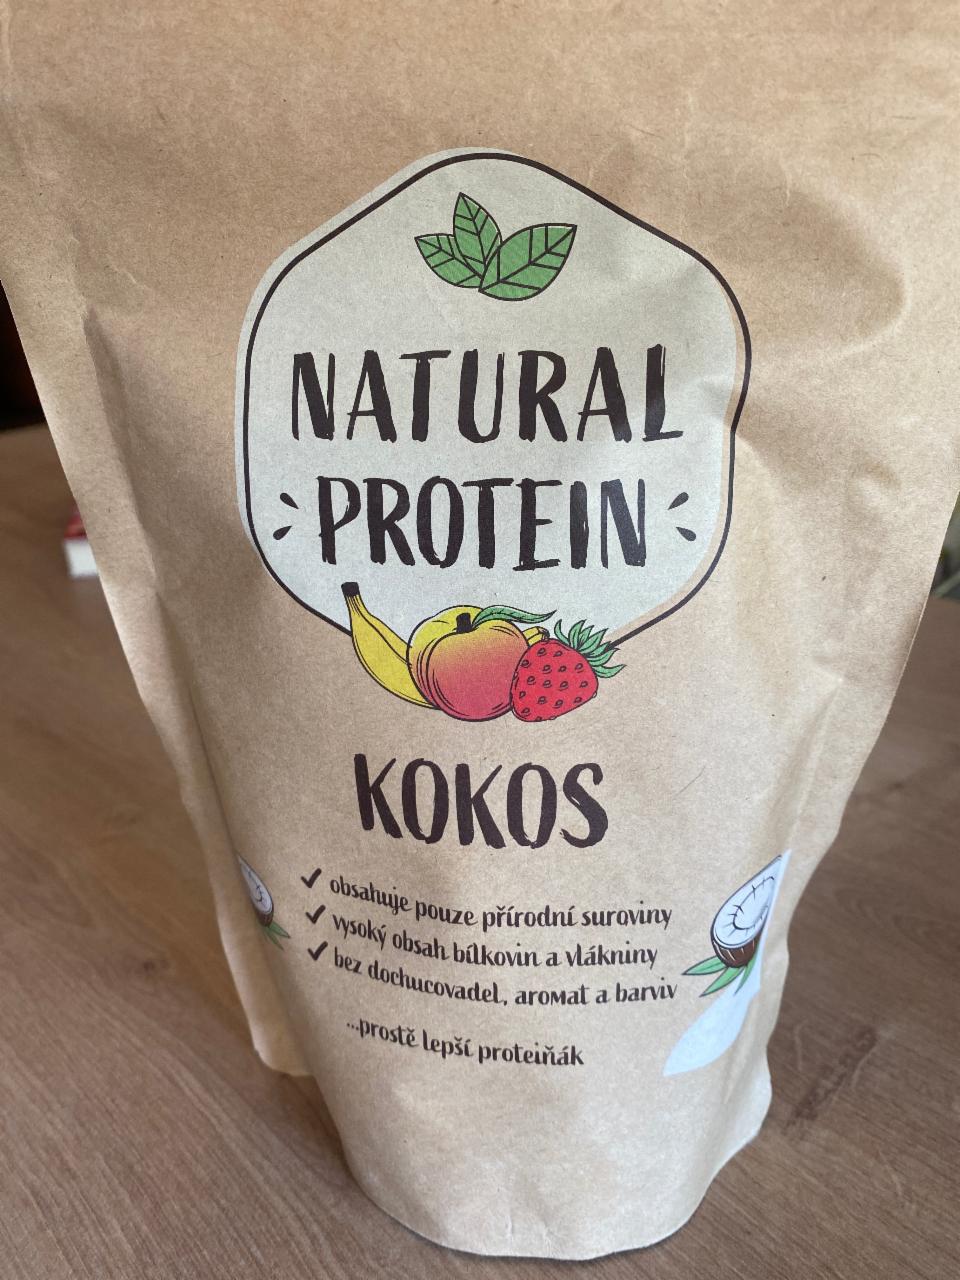 Fotografie - Náhrada jídla - Kokos Natural protein